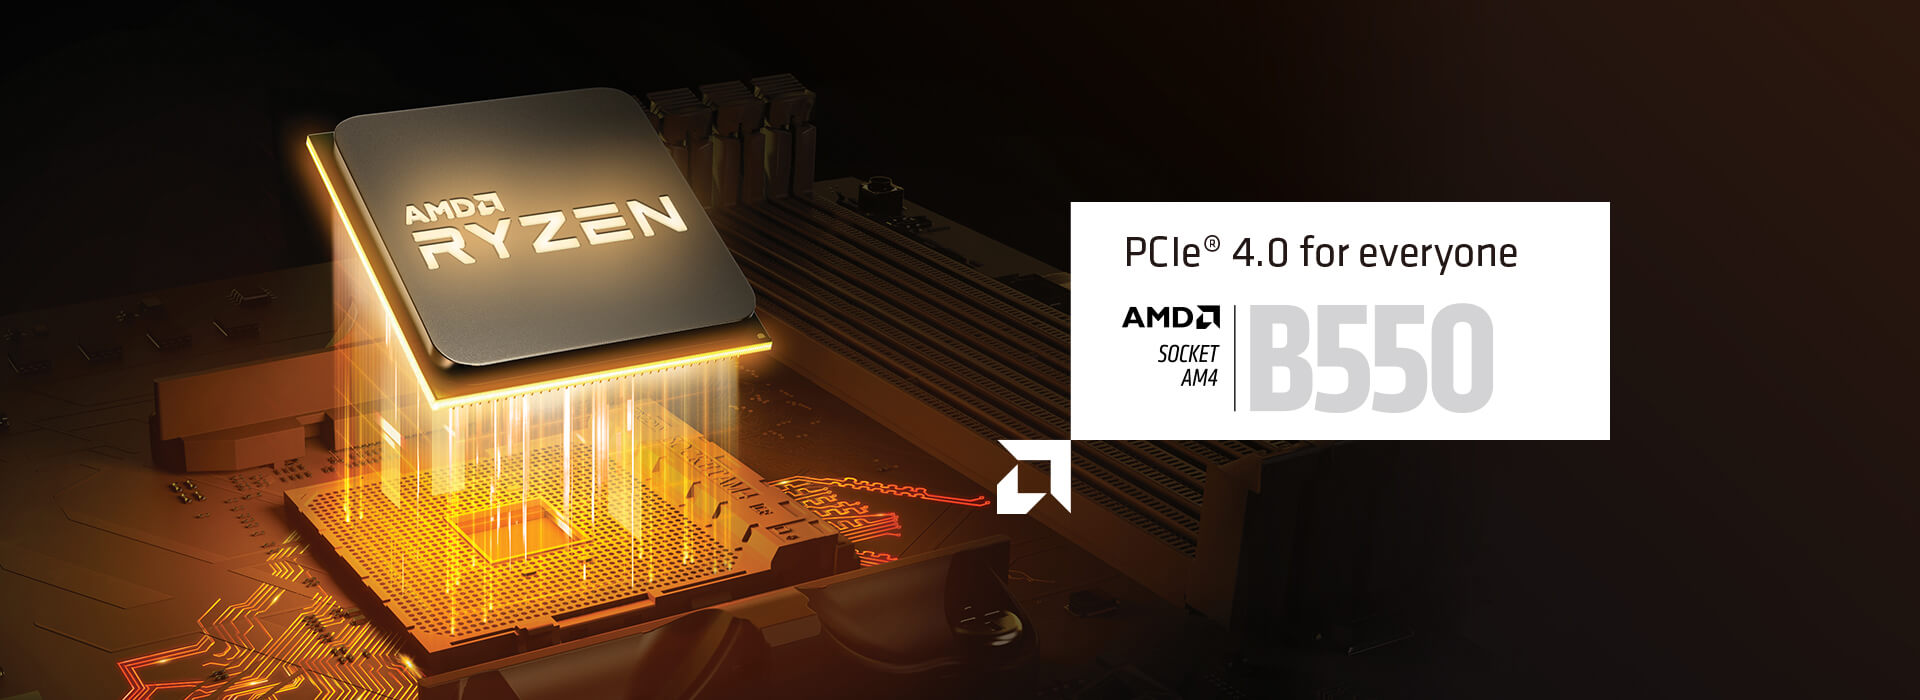 PCIe 4.0 für alle. AMD SOCKEL AM4 B550. BEREIT FÜR DIE AMD-RYZEN-DESKTOP-CPUS DER 3. GENERATION. Nicht kompatibel mit dem AMD Ryzen 5 3400G & AMD Ryzen 3 3200G.